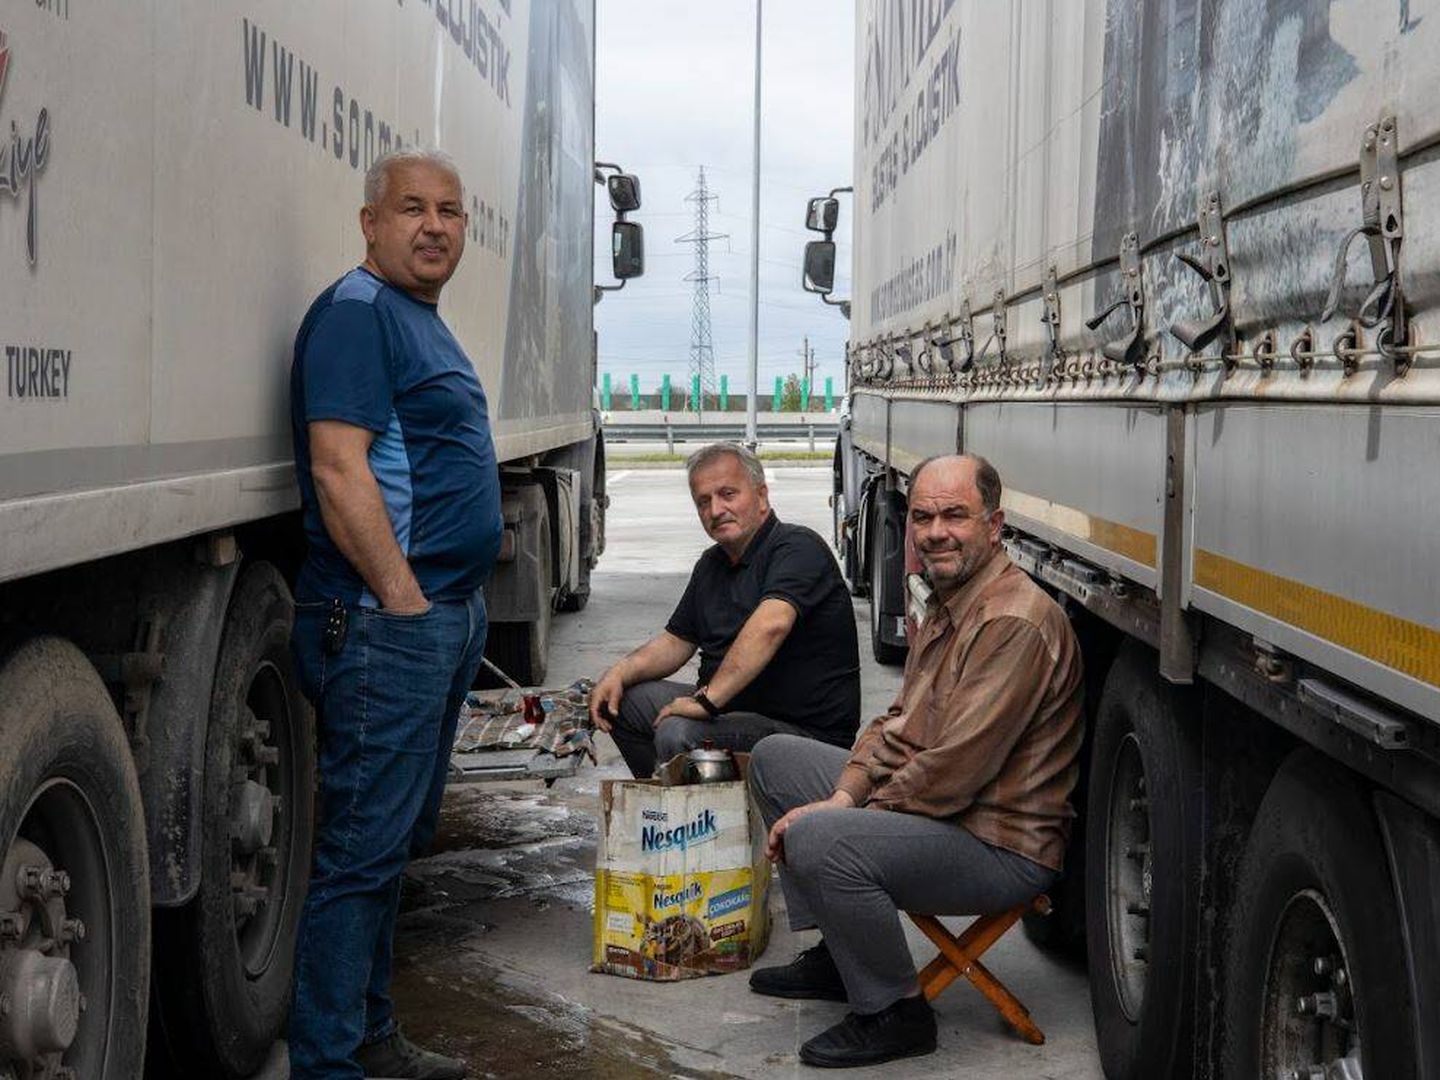 Los camioneros turcos Adnam y Saban, que transportan piezas de automóvil desde Turquía a Francia y Holanda, descansan a la sombra de su camión cerca de la frontera entre Rumanía y Bulgaria, el pasado 4 de abril. (Lola García-Ajofrín/El Confidencial/PULSE)